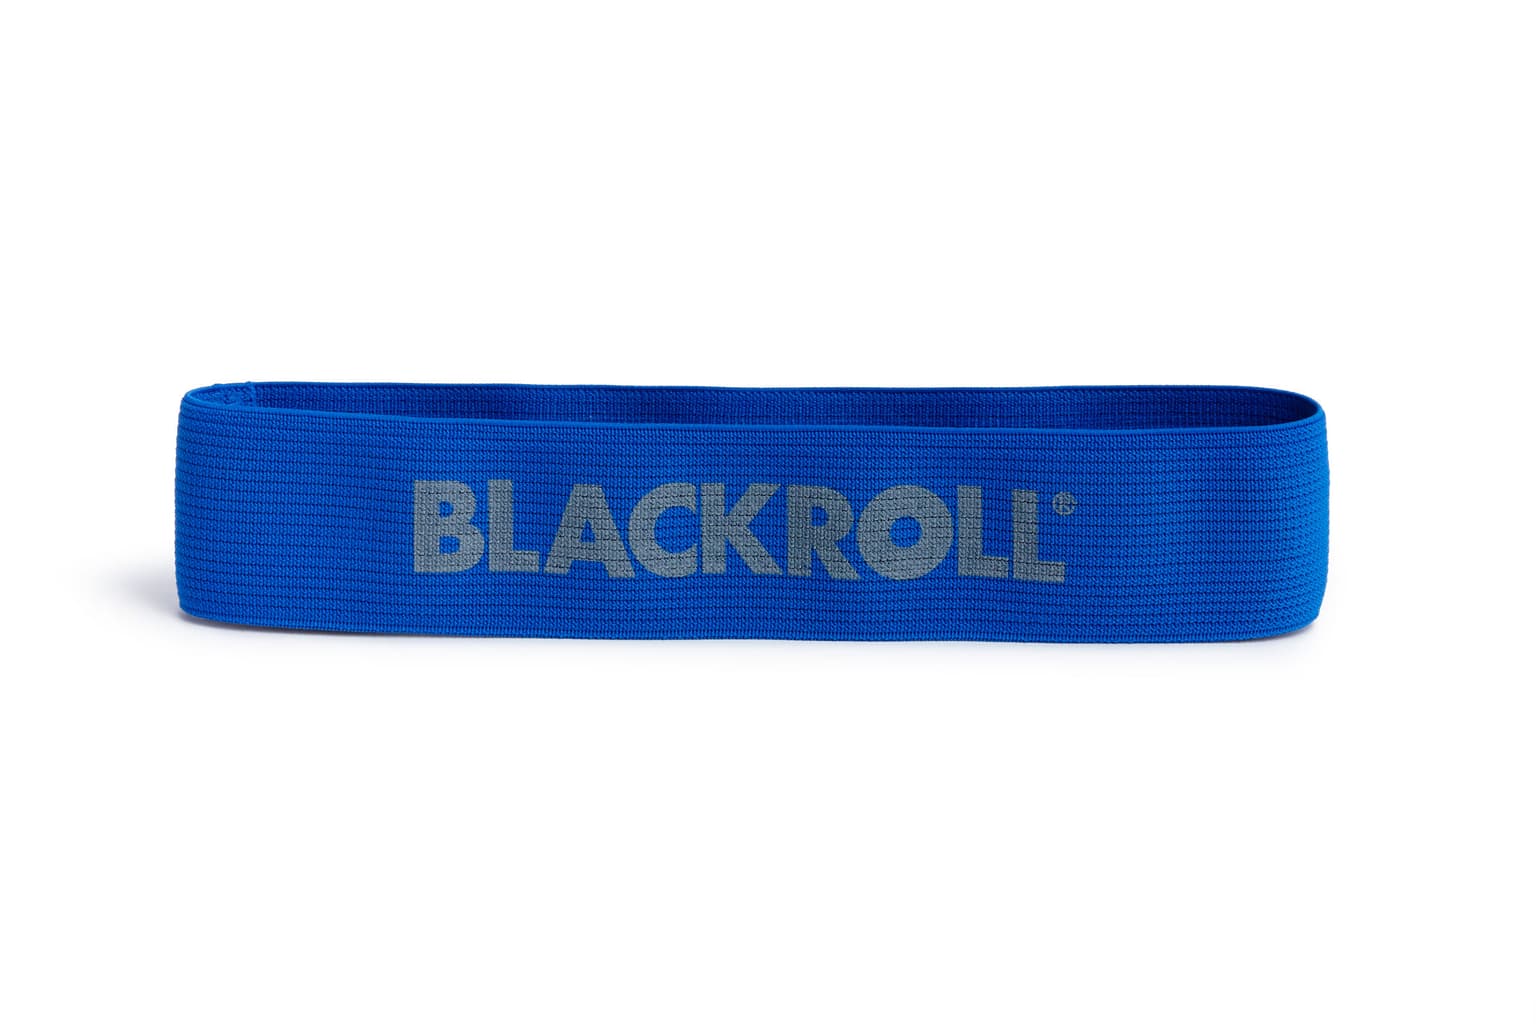 Blackroll Blackroll Loop Band Set Elastico fitness 4